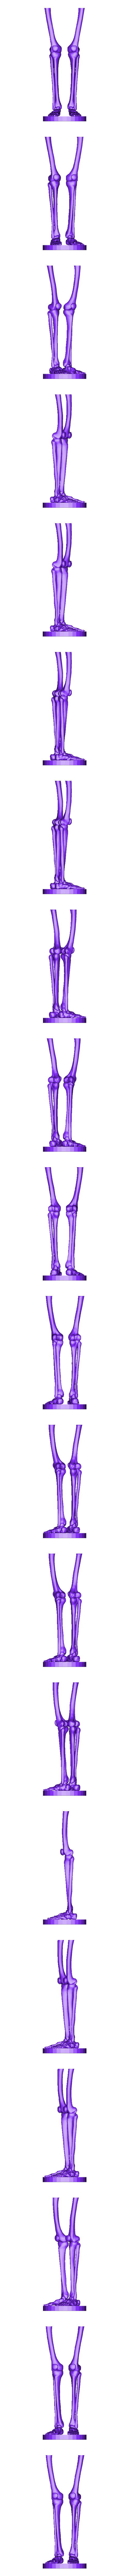 limbs_skel.stl Télécharger le fichier STL gratuit Squelette humain • Objet imprimable en 3D, Cornbald